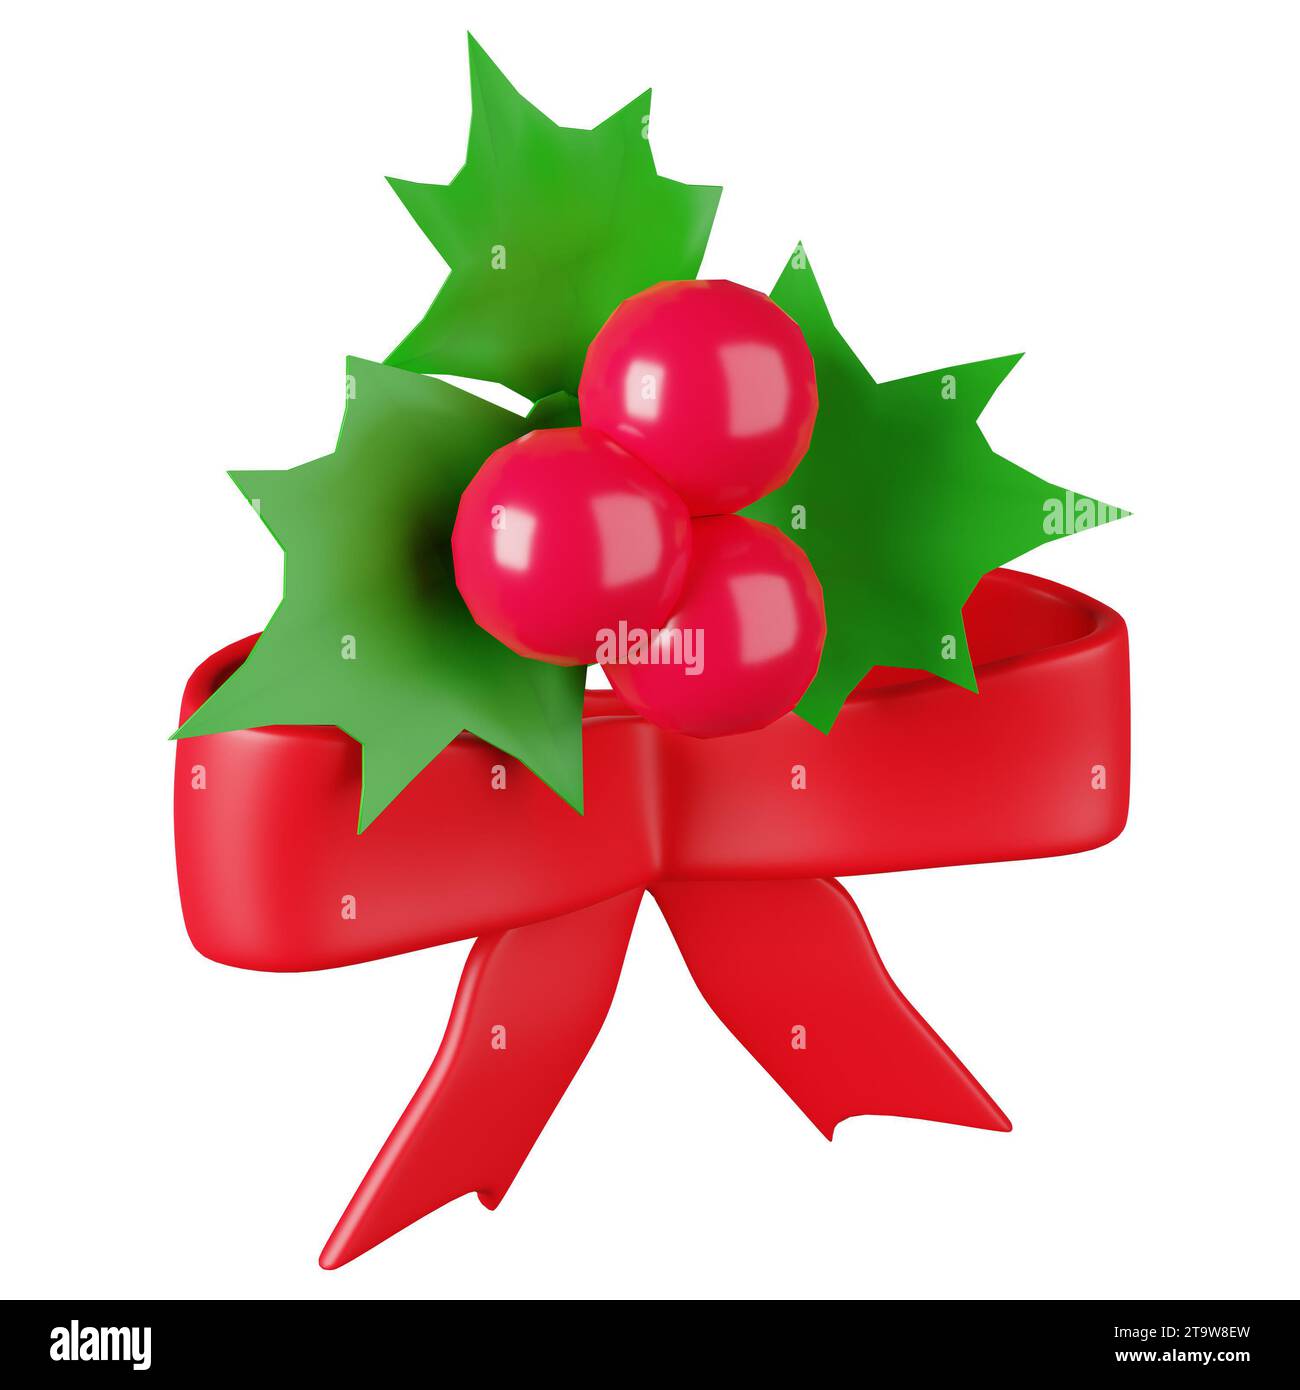 Agrémentez vos cadeaux avec élégance grâce au noeud de Noël, emblème de la beauté festive et la touche finale parfaite. Banque D'Images